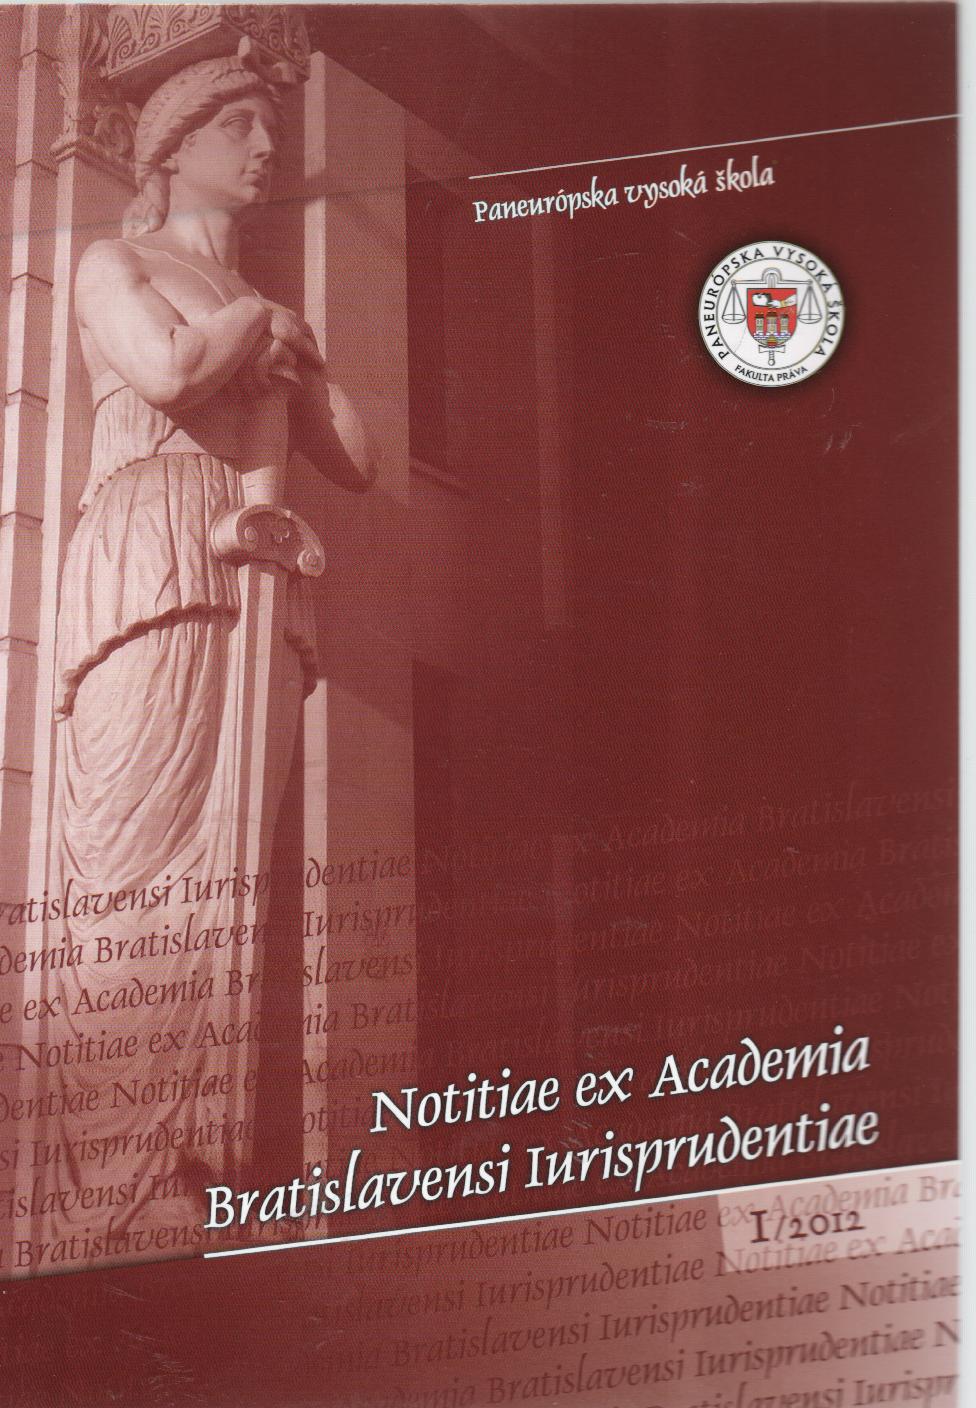 1/2012 Notitiae ex Academia Bratislavensi Iurisprudentiae